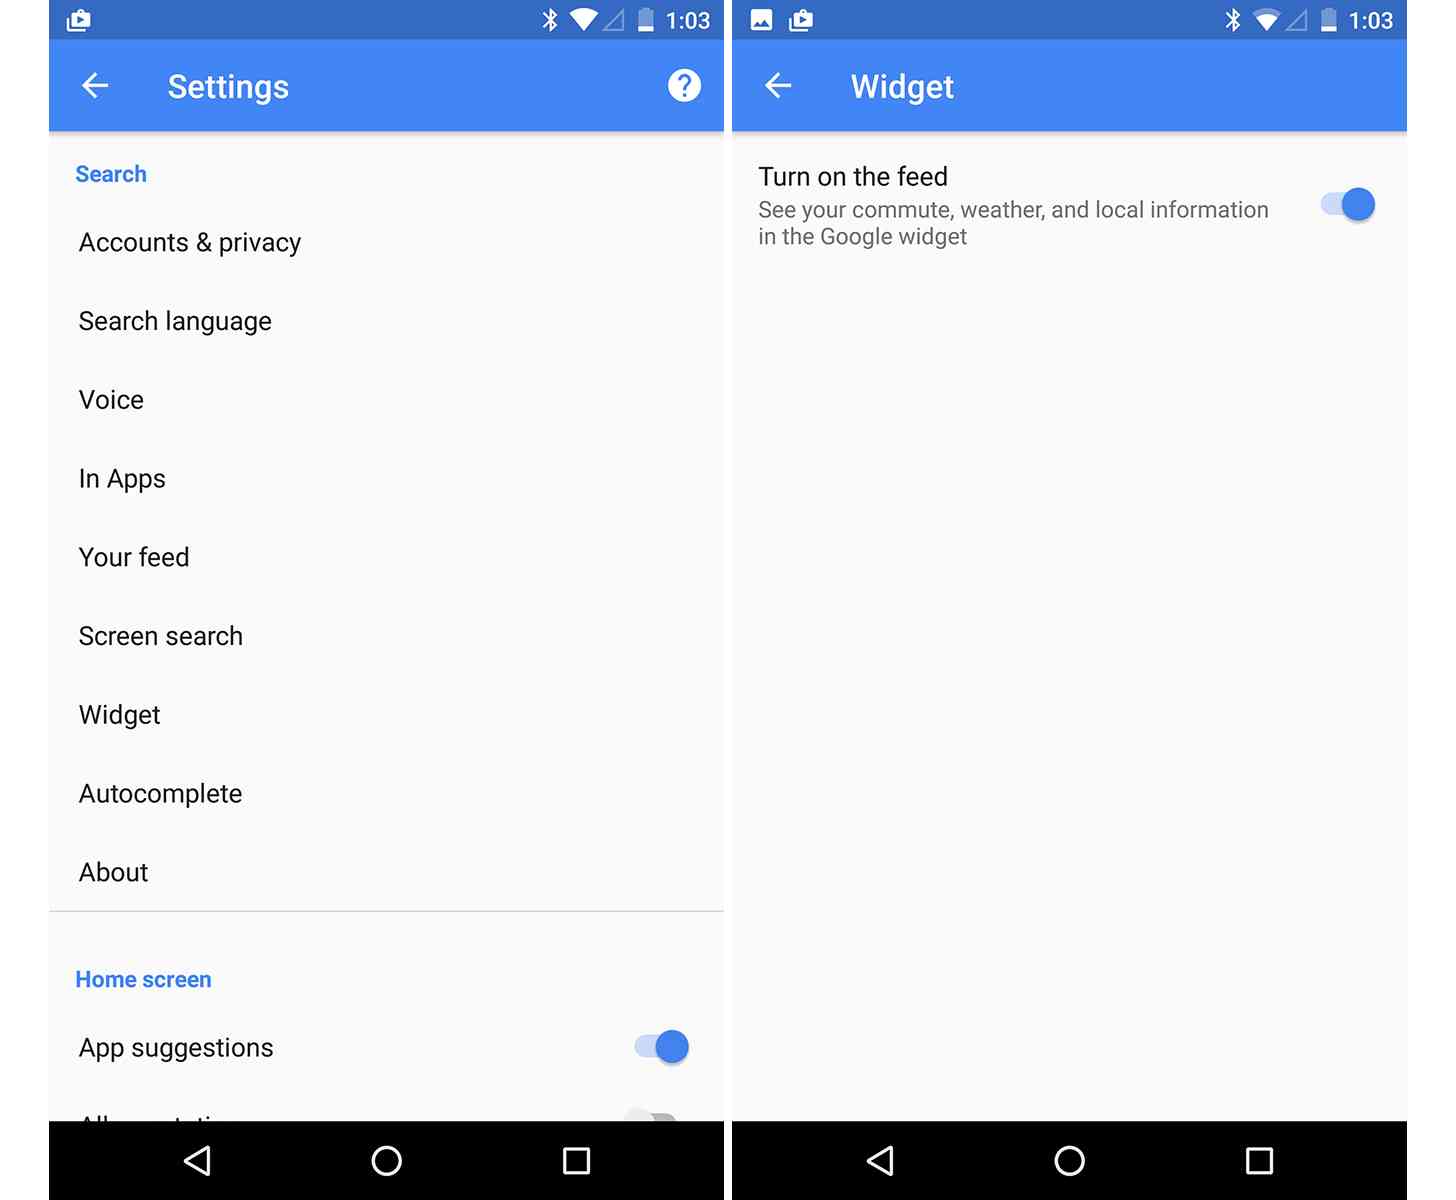 New Google app widget Settings